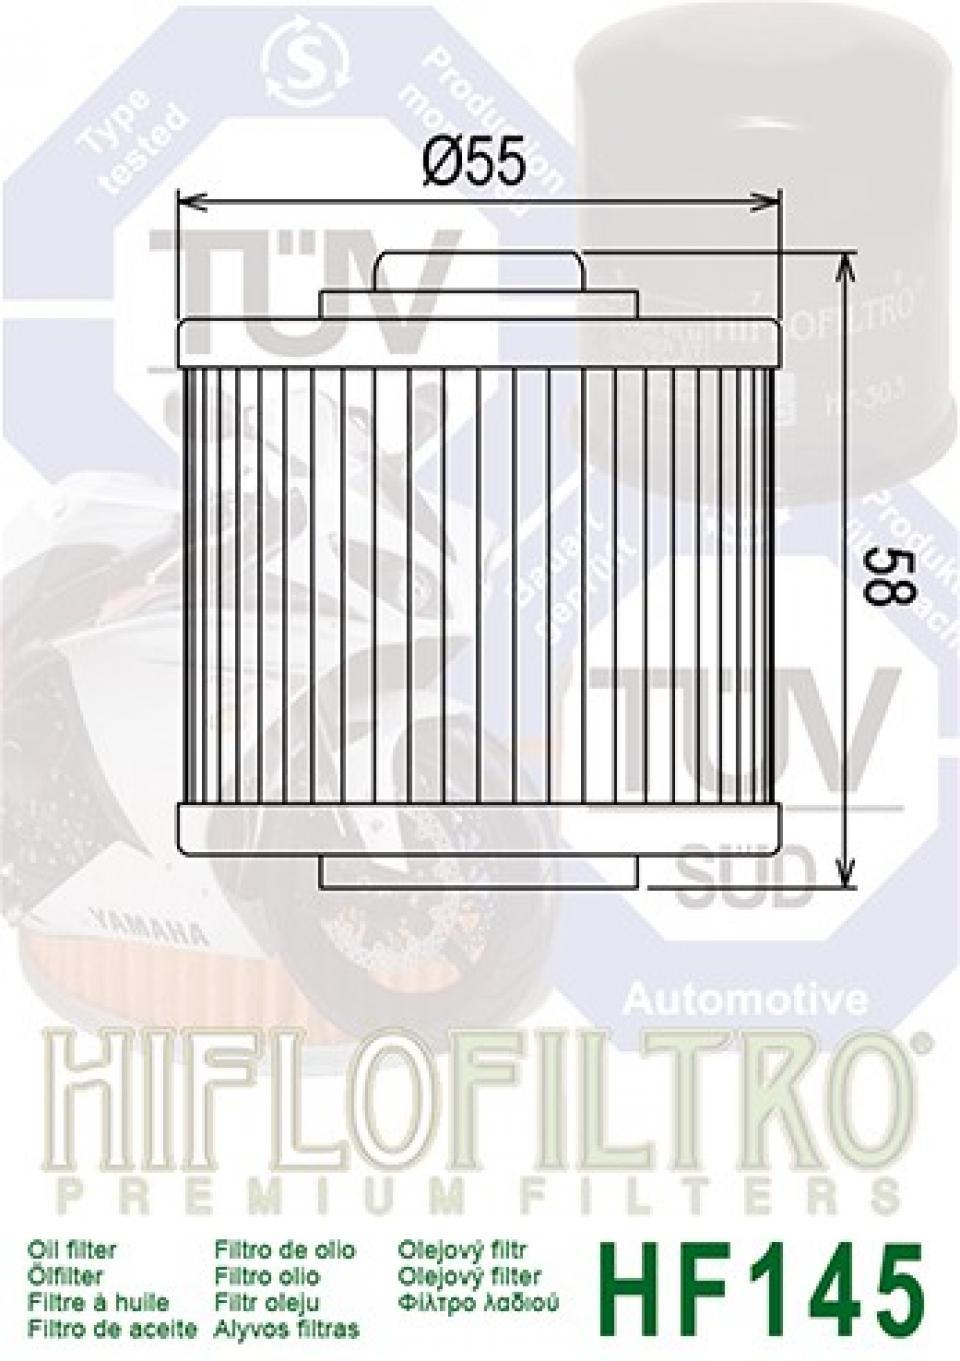 Filtre à huile Hiflofiltro pour Moto Yamaha 600 Xt 4 Valv 1985 à 1986 Neuf